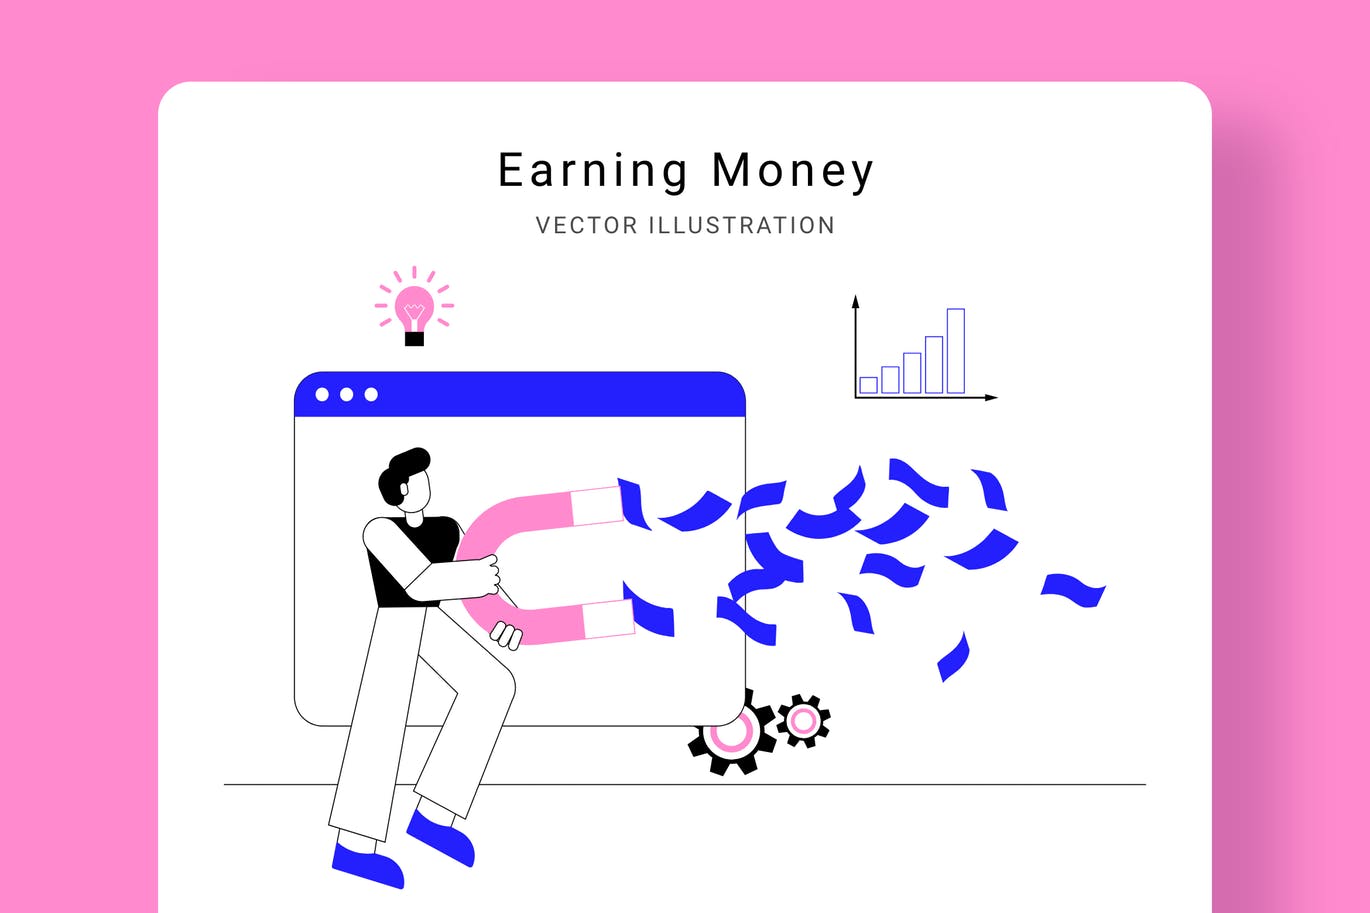 吸金磁石矢量素材库精选概念插画设计素材 Earning Money Vector Illustration Scene插图